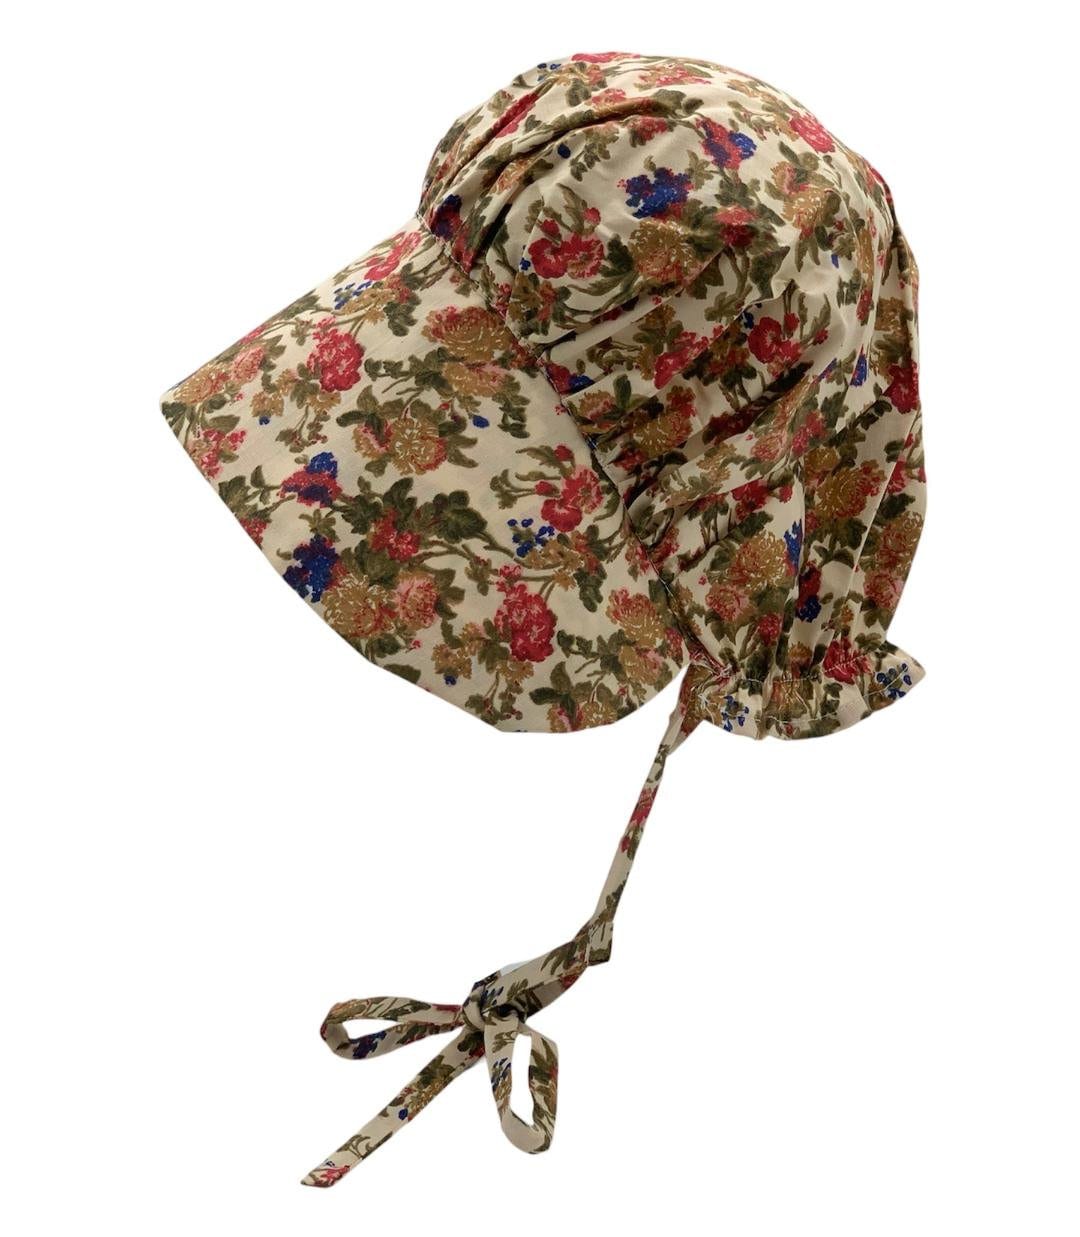 Old West Pioneer Bonnet, Prairie Girl Sun Hat